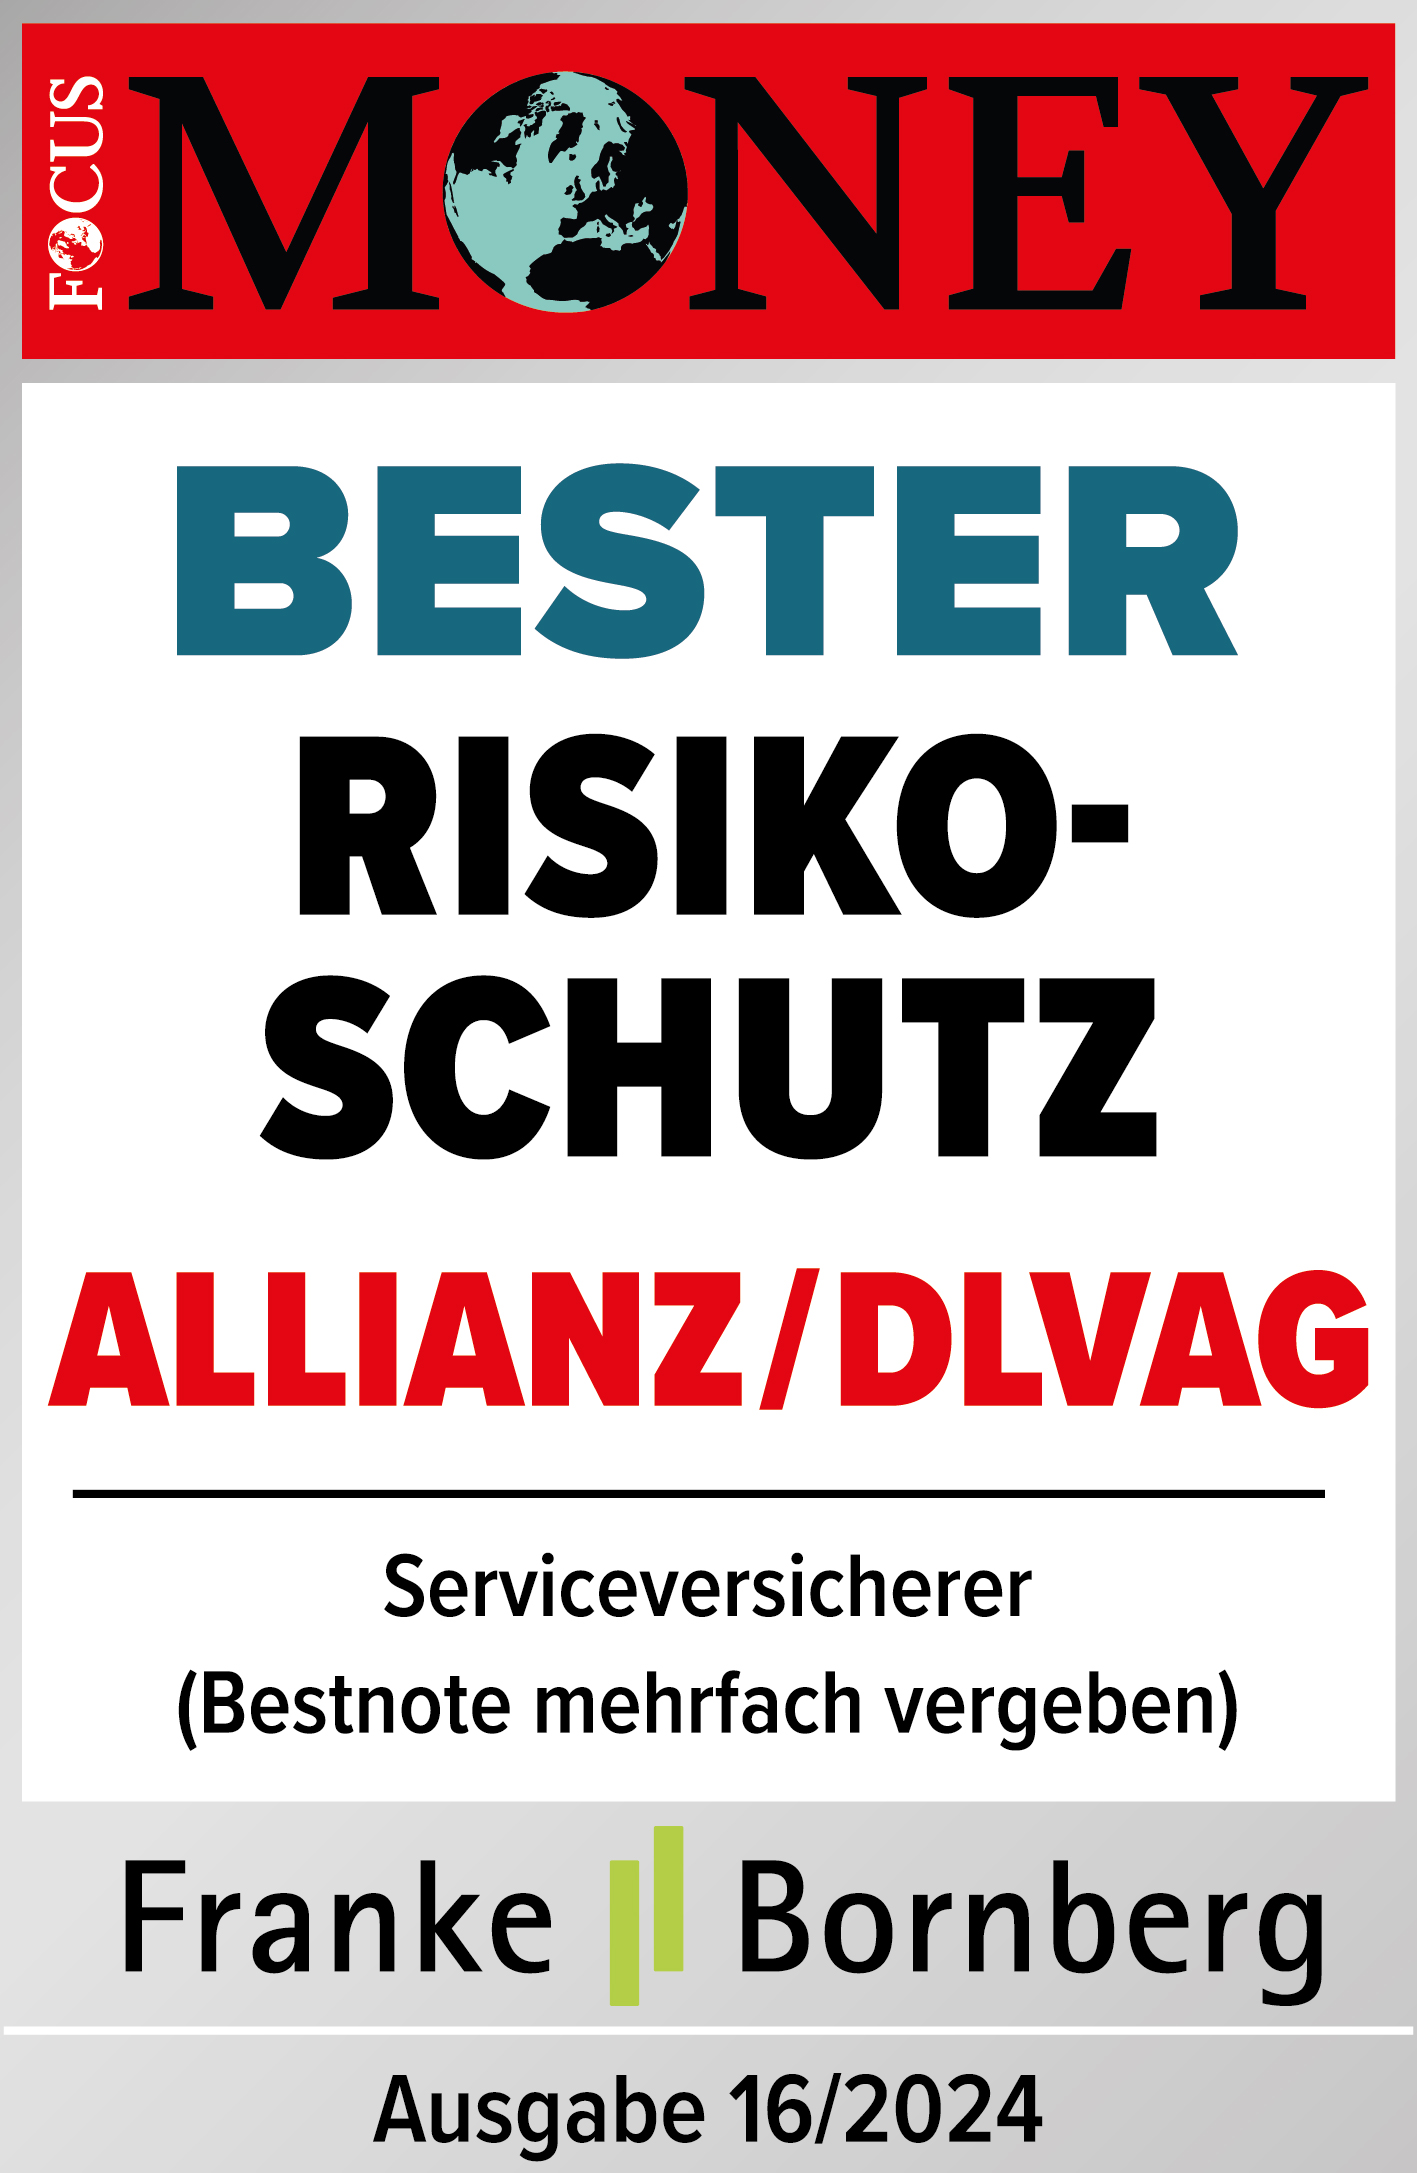 Testsiegel: Allianz Focus Money Bester Risikoschutz Ausgabe 16/2023